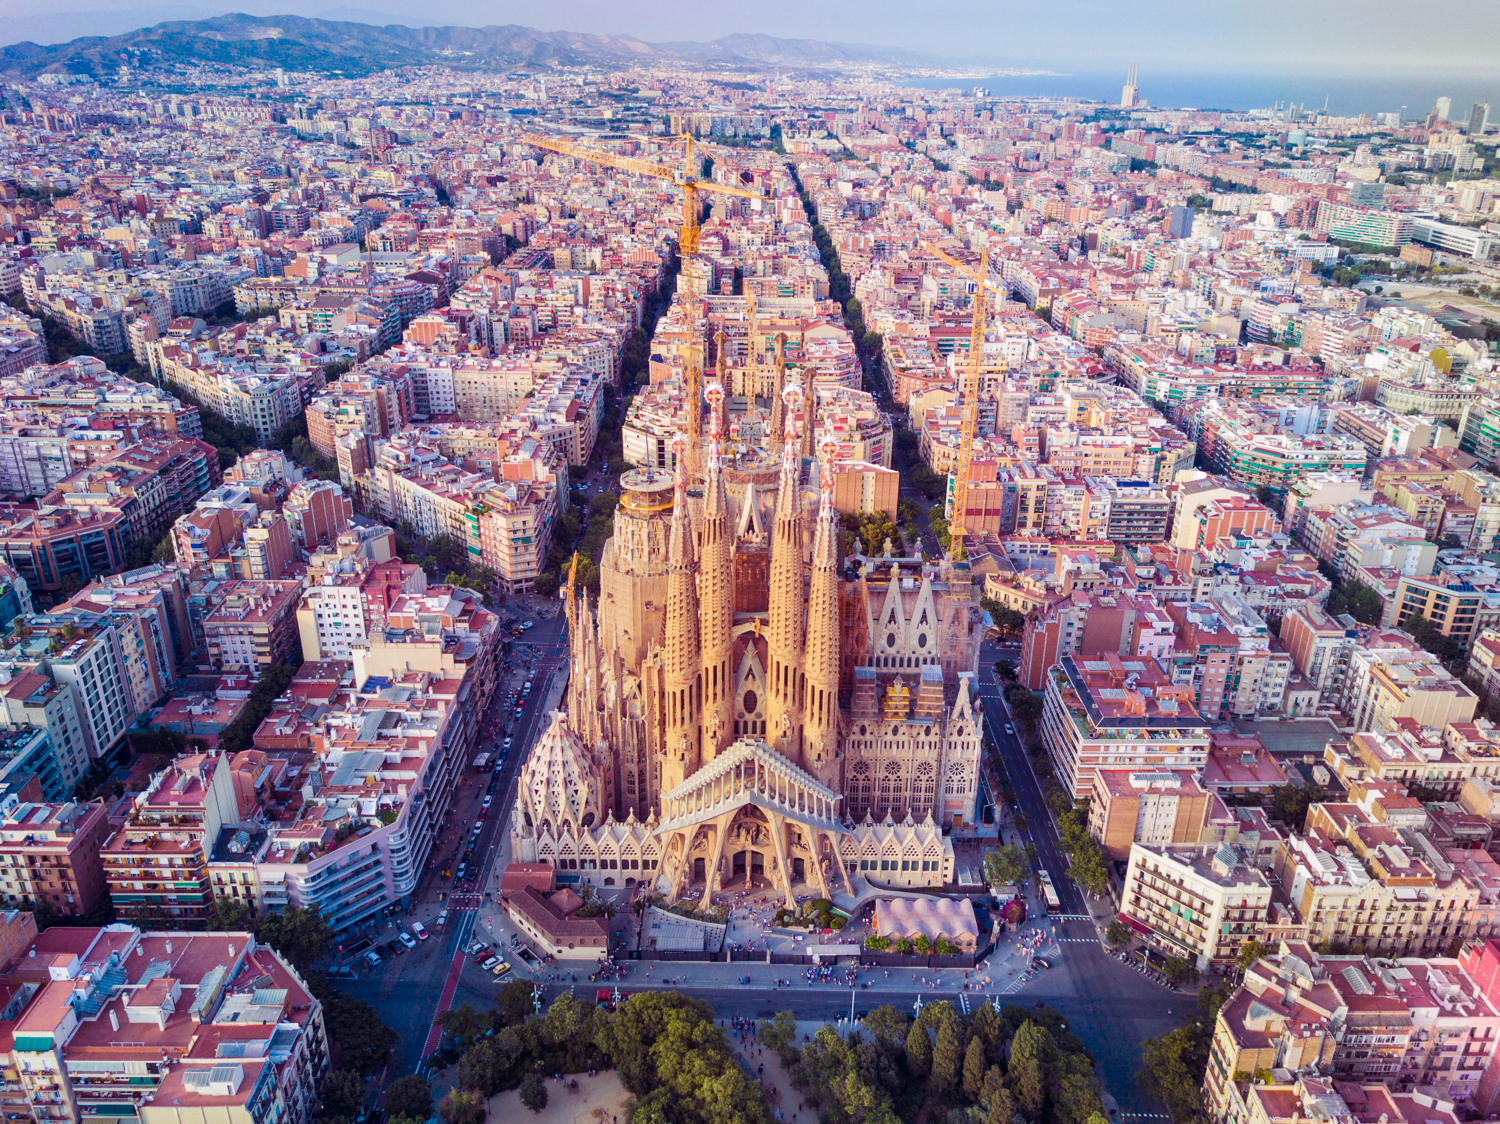 Barcelona, Spain - La Sagrada Familia - NYC Photographer ©Max Reed